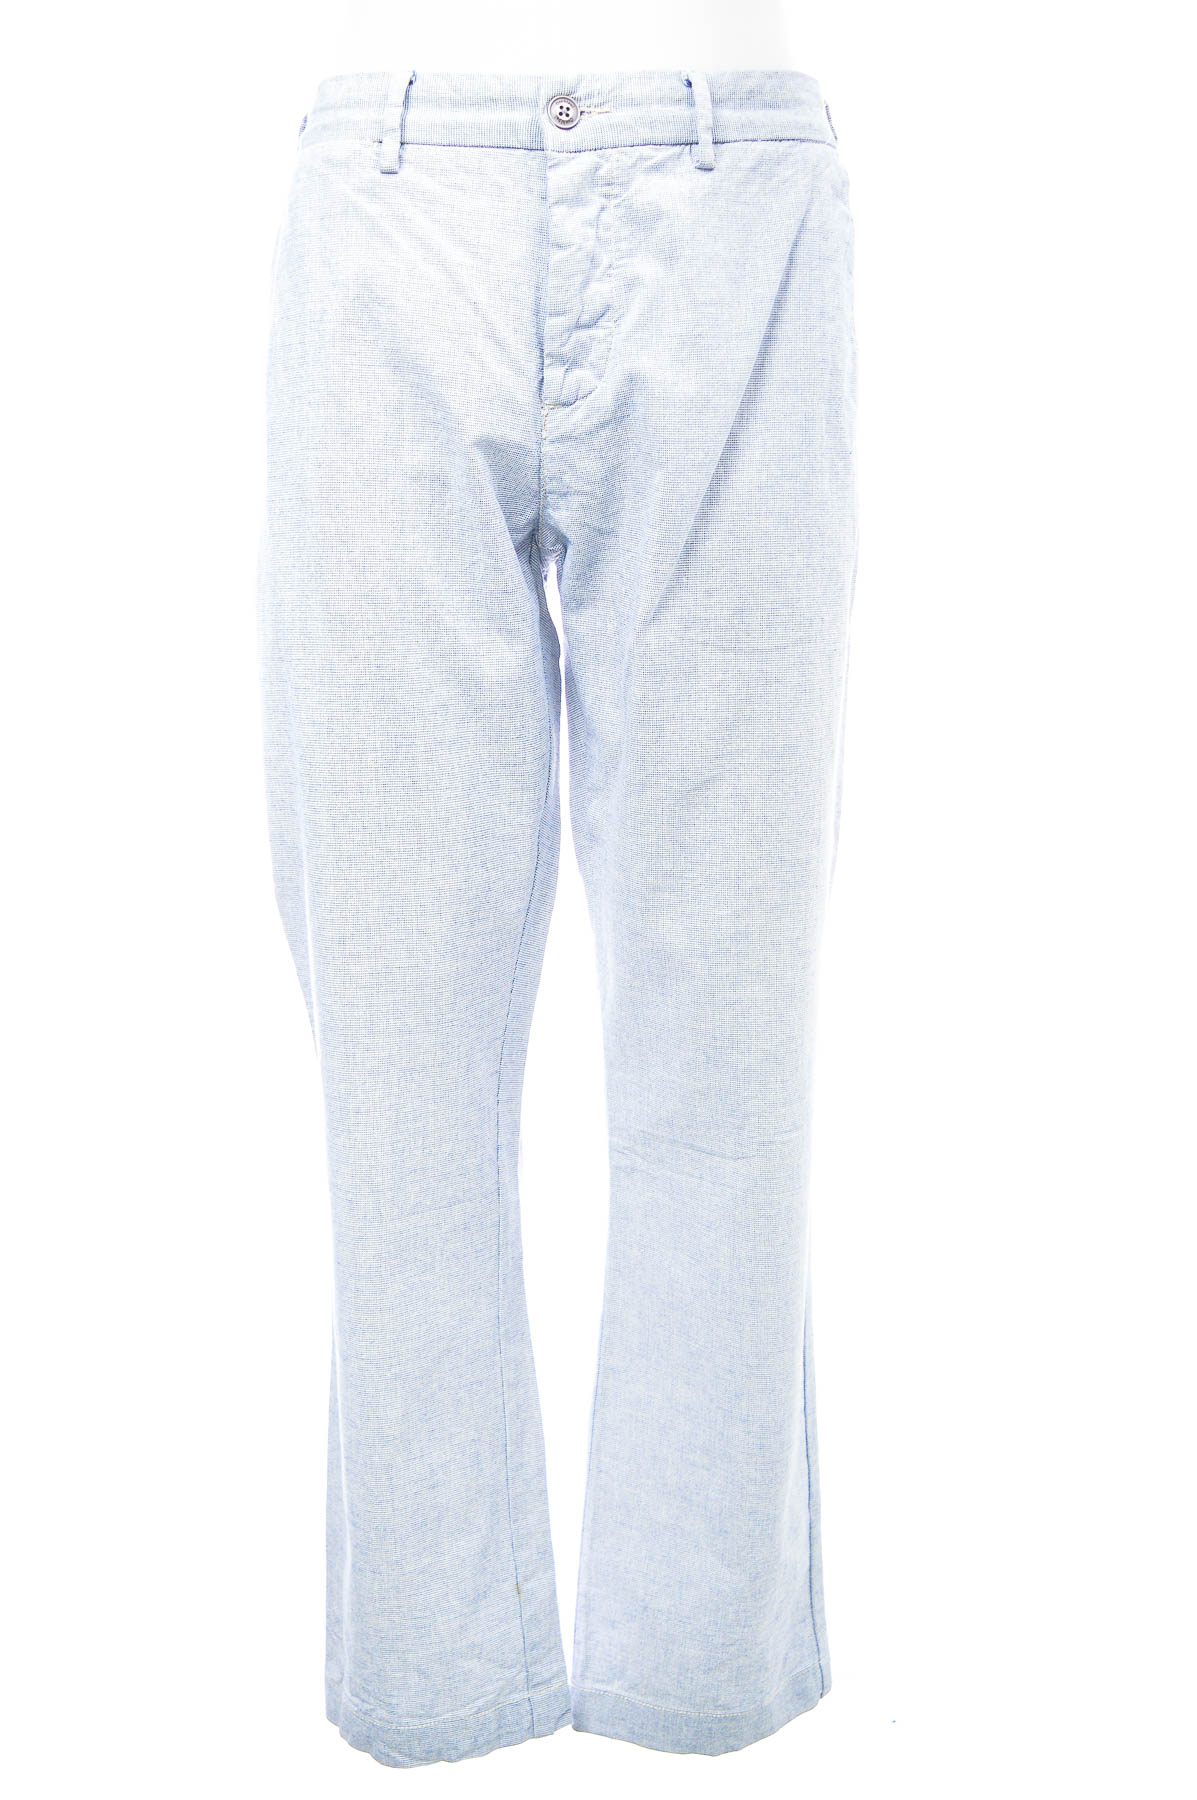 Men's trousers - Conbipel - 0